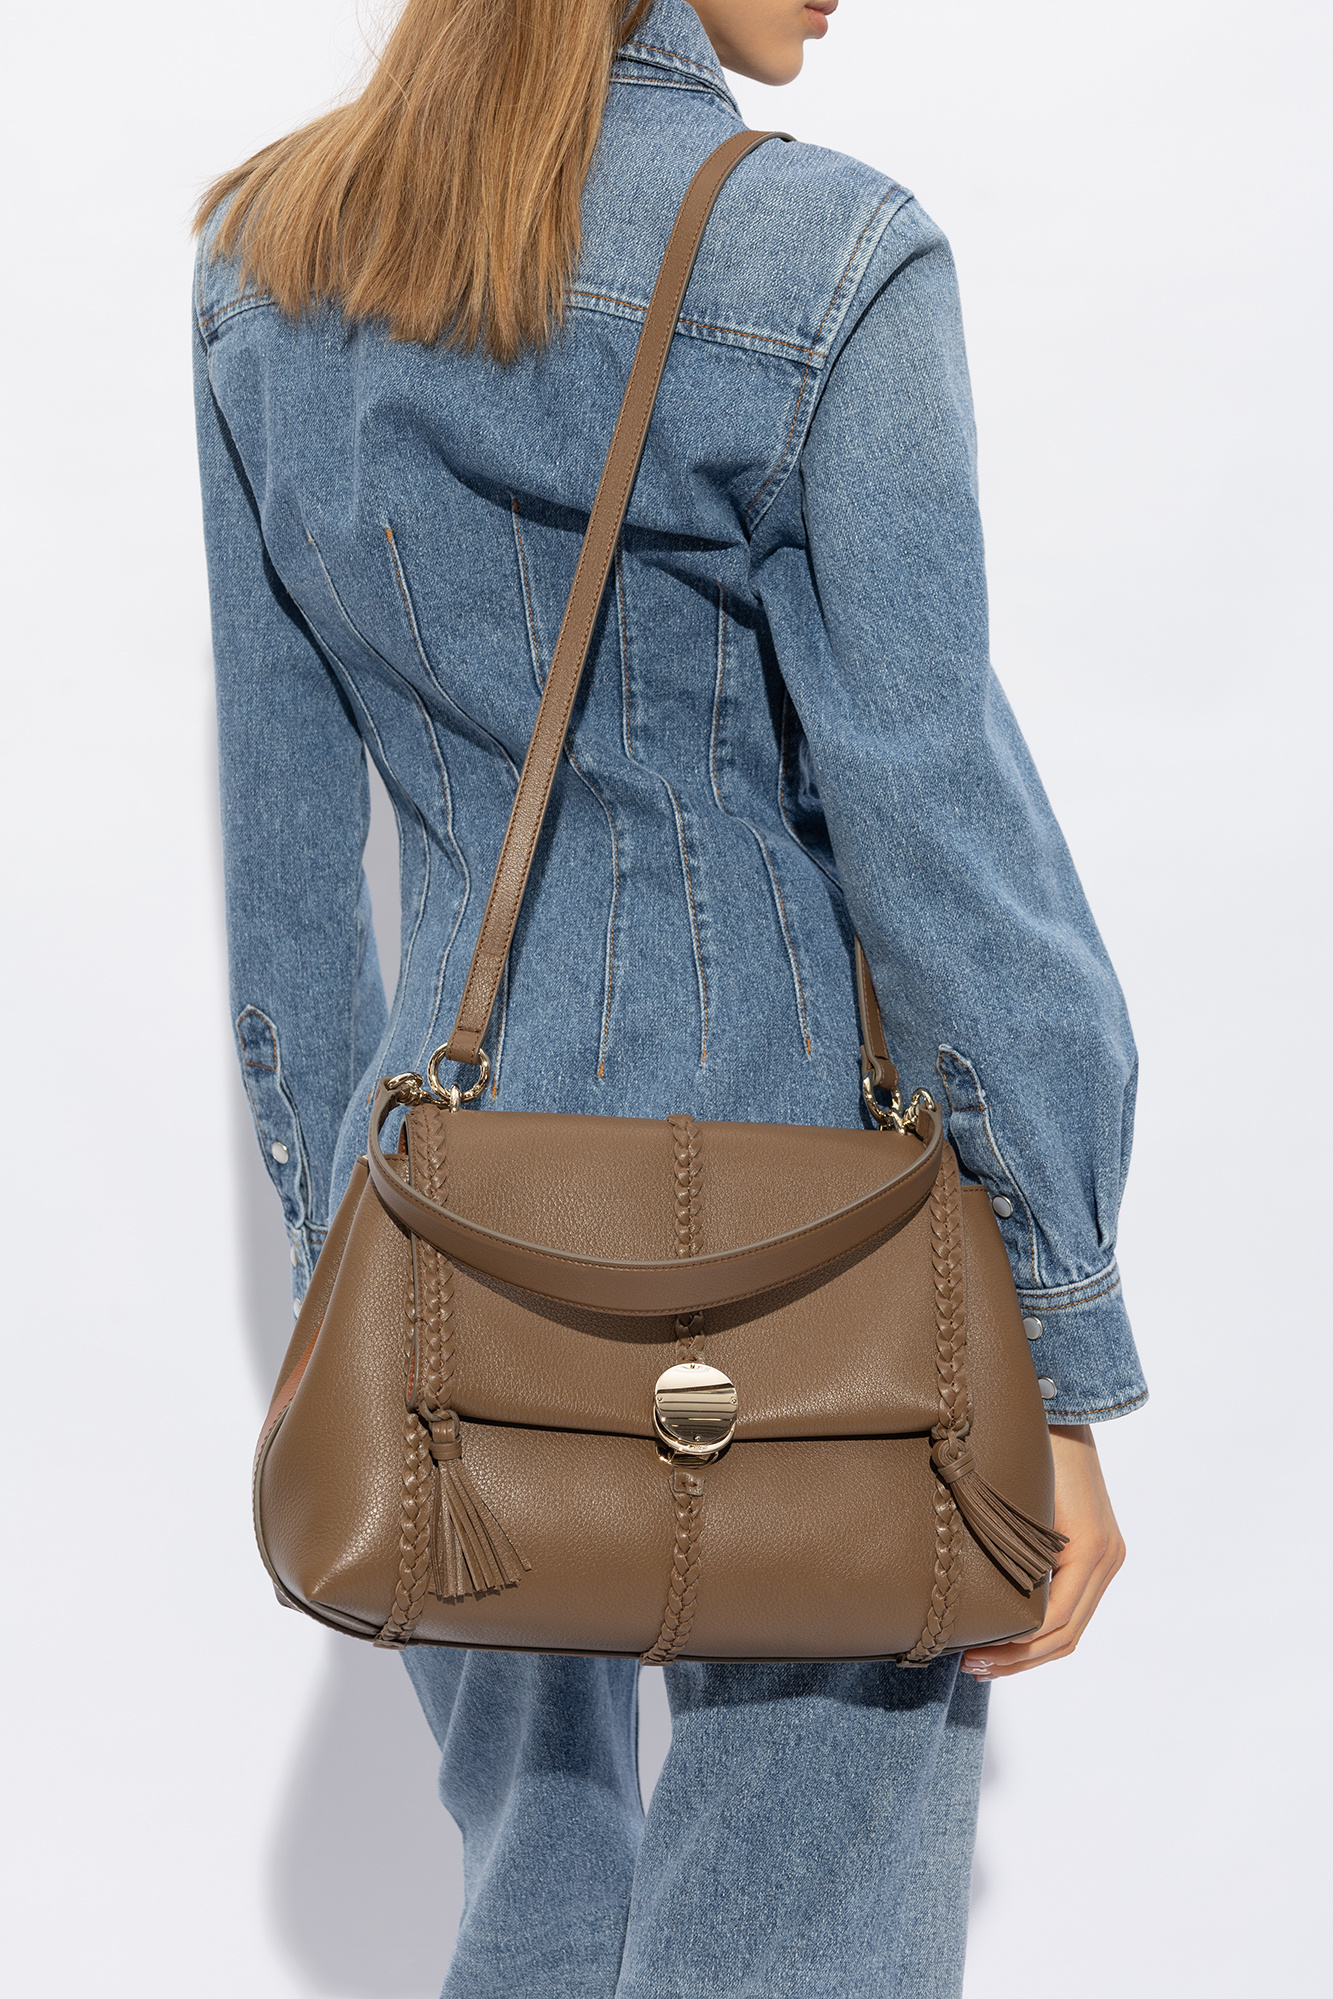 Chloé ‘Penelope Medium’ shoulder bag